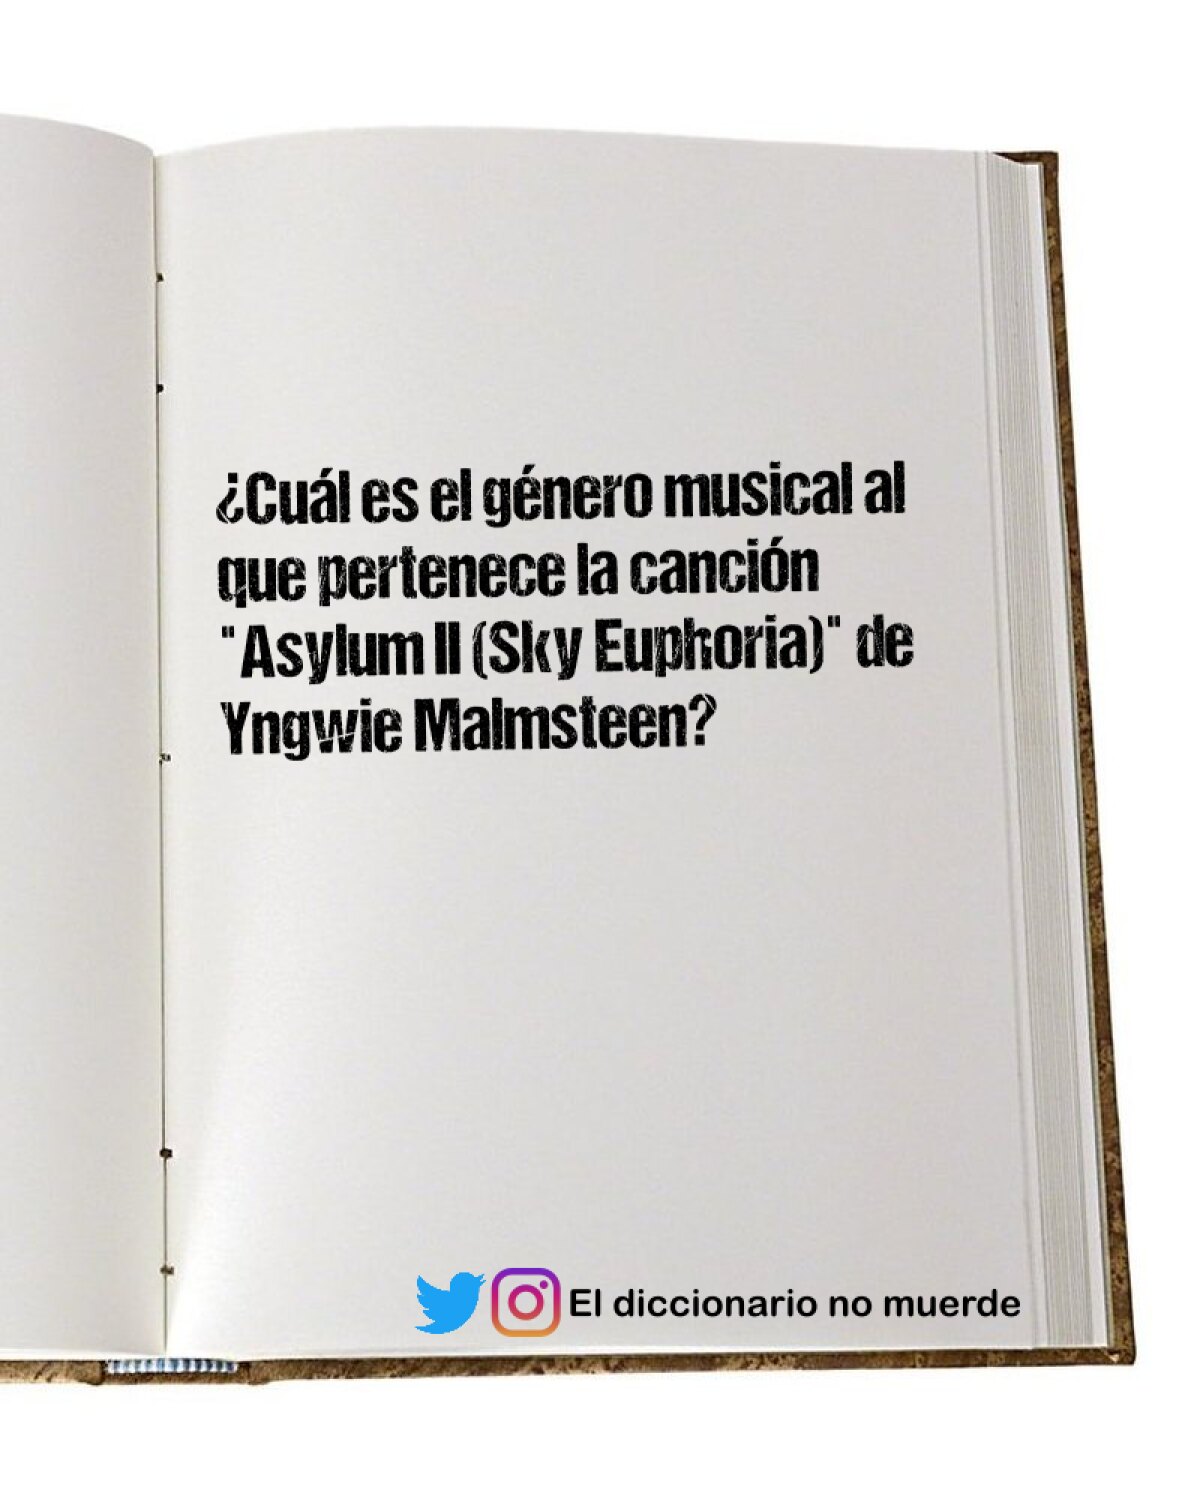 ¿Cuál es el género musical al que pertenece la canción "Asylum II (Sky Euphoria)" de Yngwie Malmsteen?